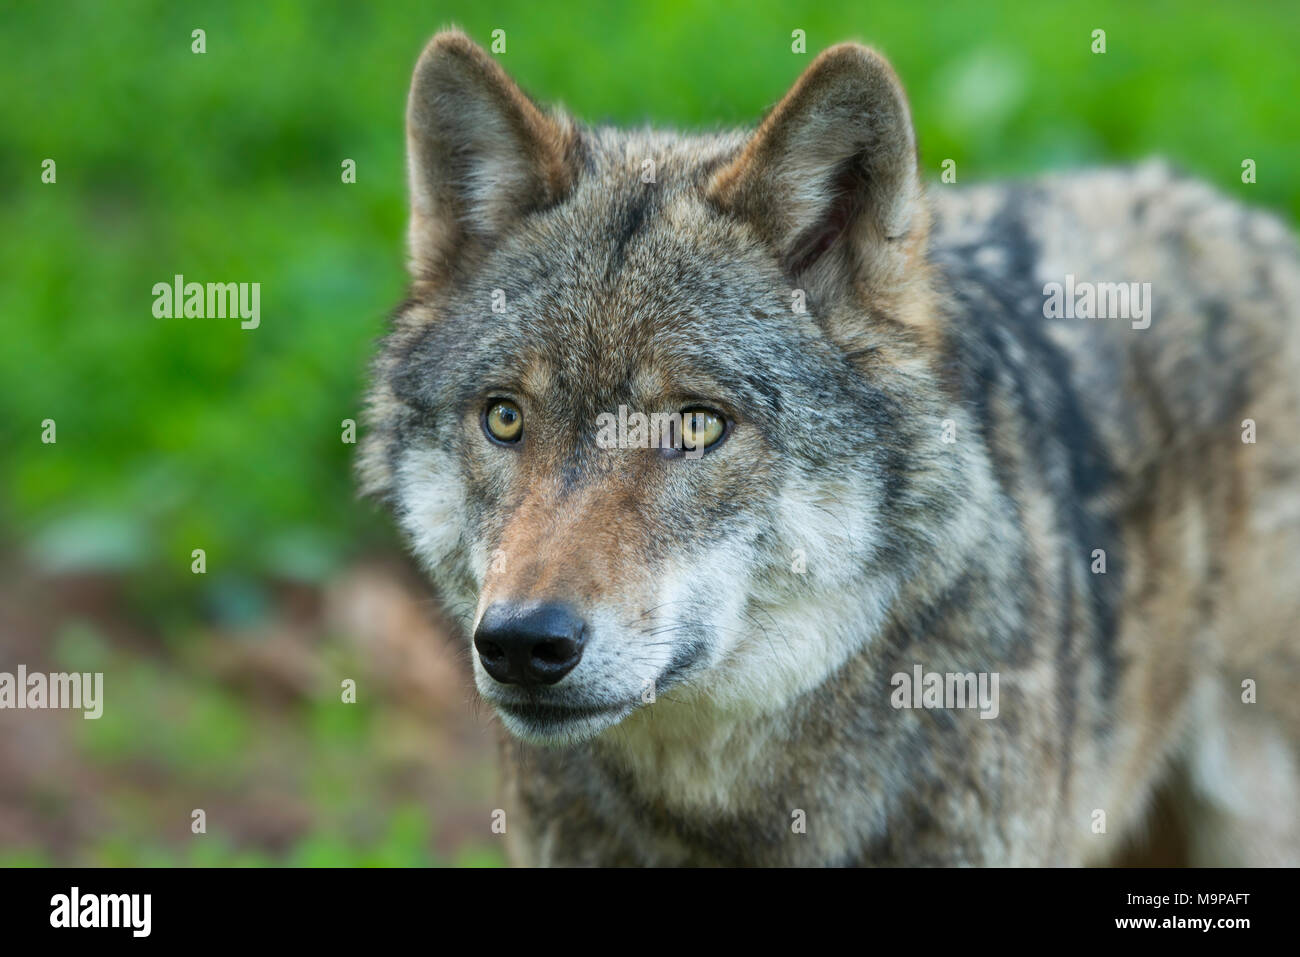 Le loup (Canis lupus), portrait, animal captif, Allemagne Banque D'Images